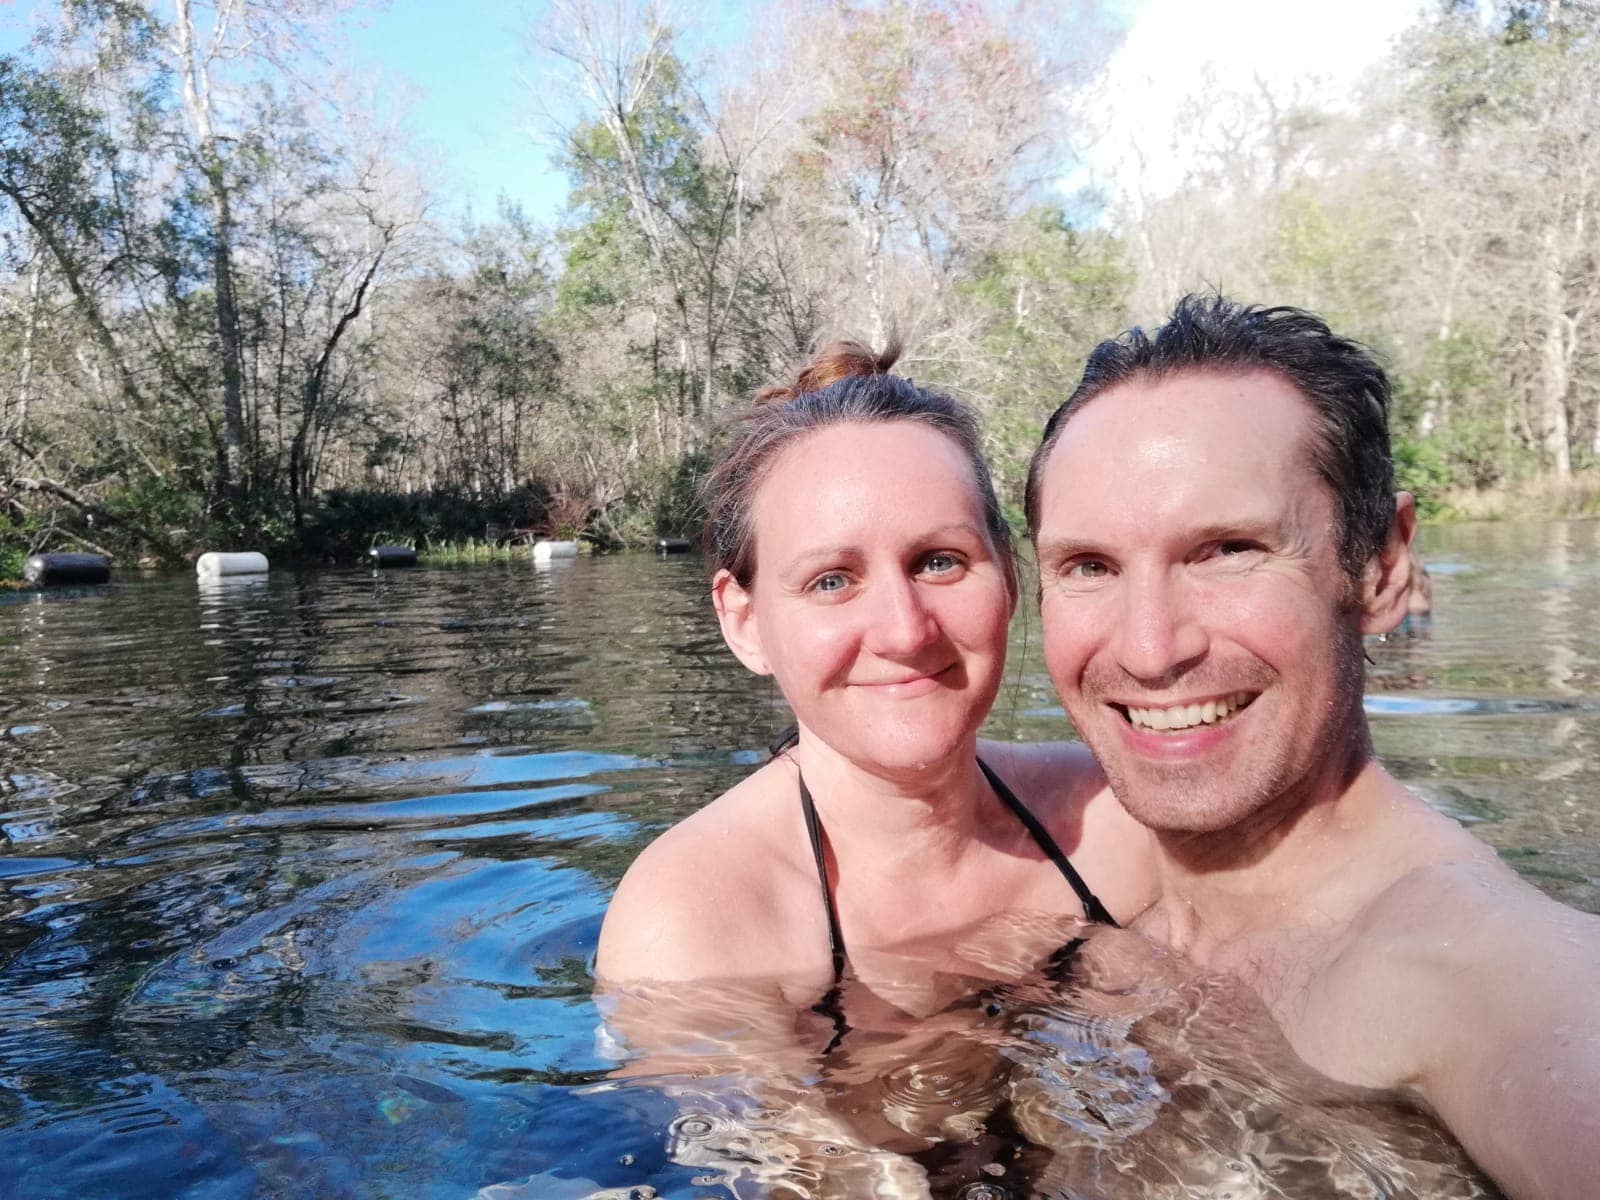 Selfie at Ichetucknee Springs, Florida